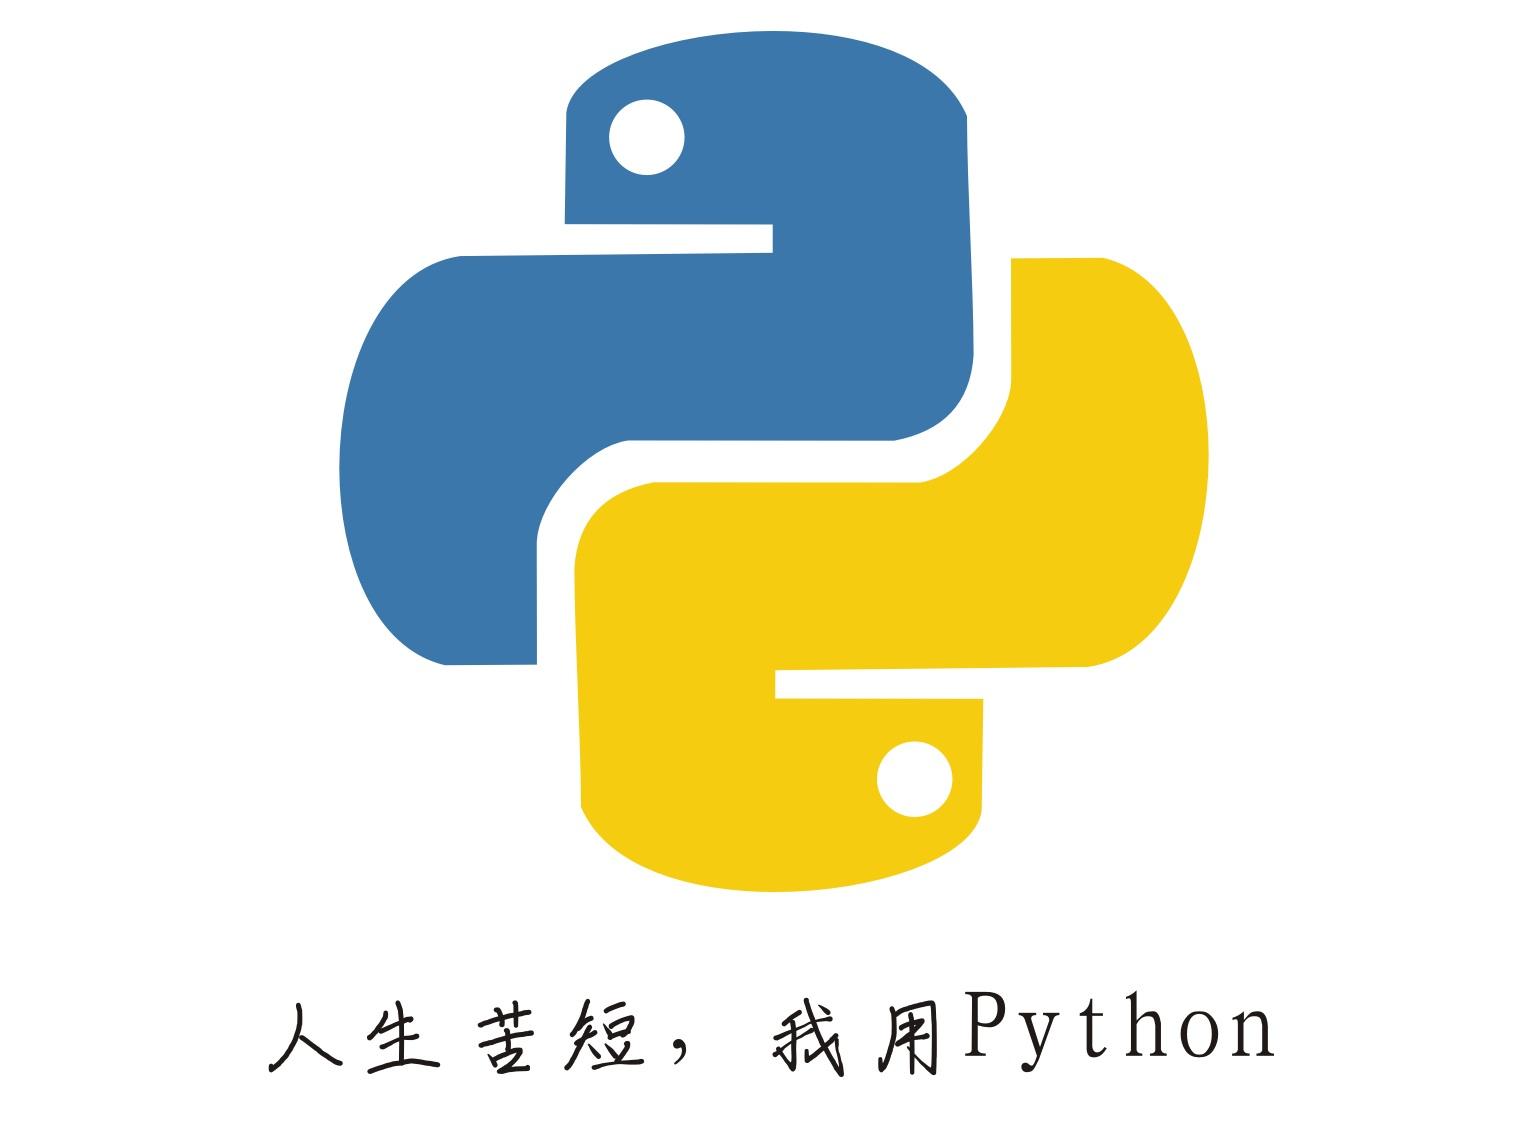 💊 Python疑難雜症】TypeError: exceptions must derive from Base..｜方格子vocus